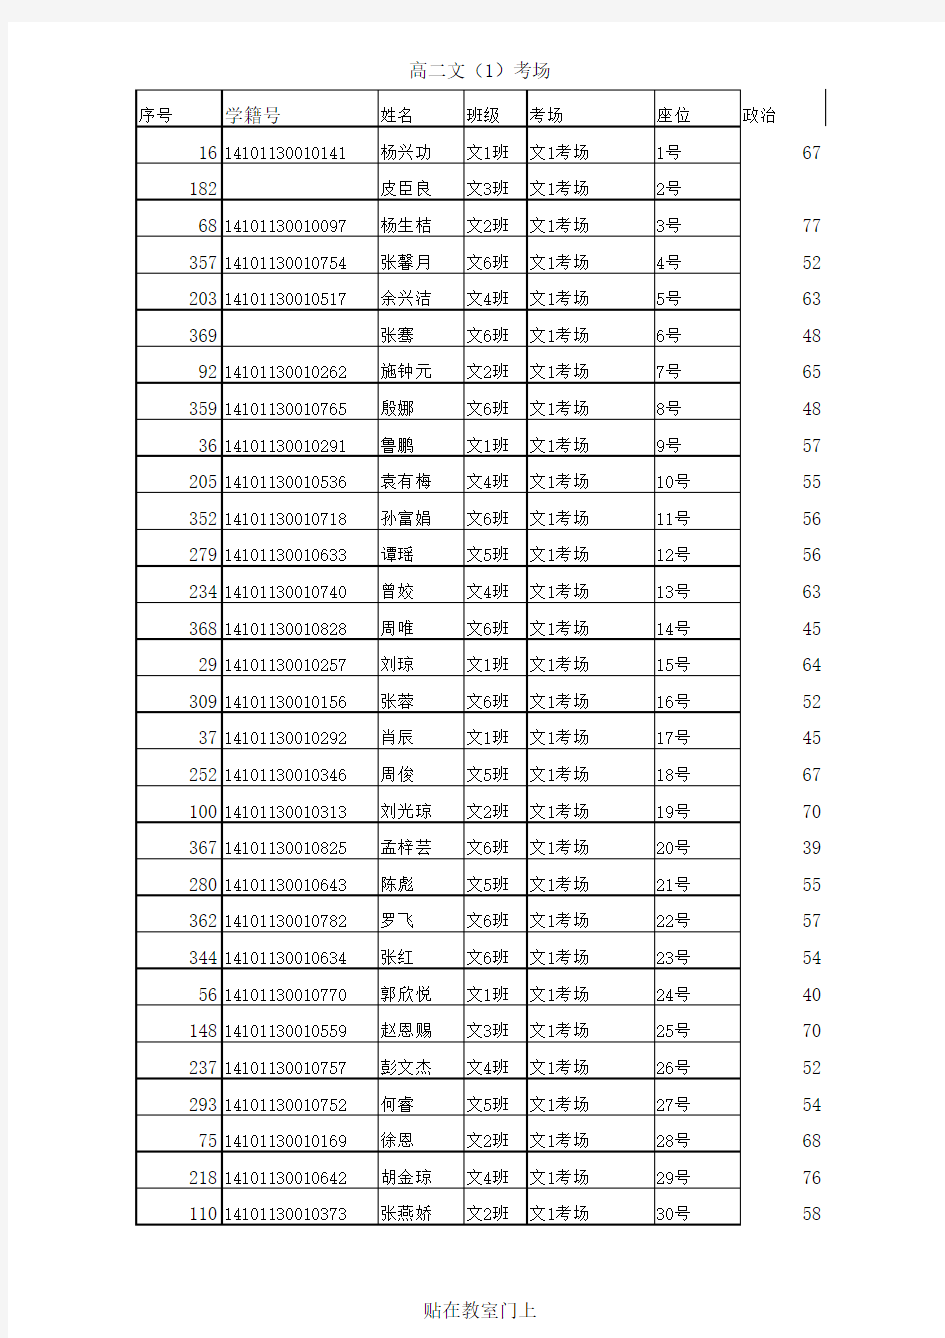 高二期末考试名单(登分表